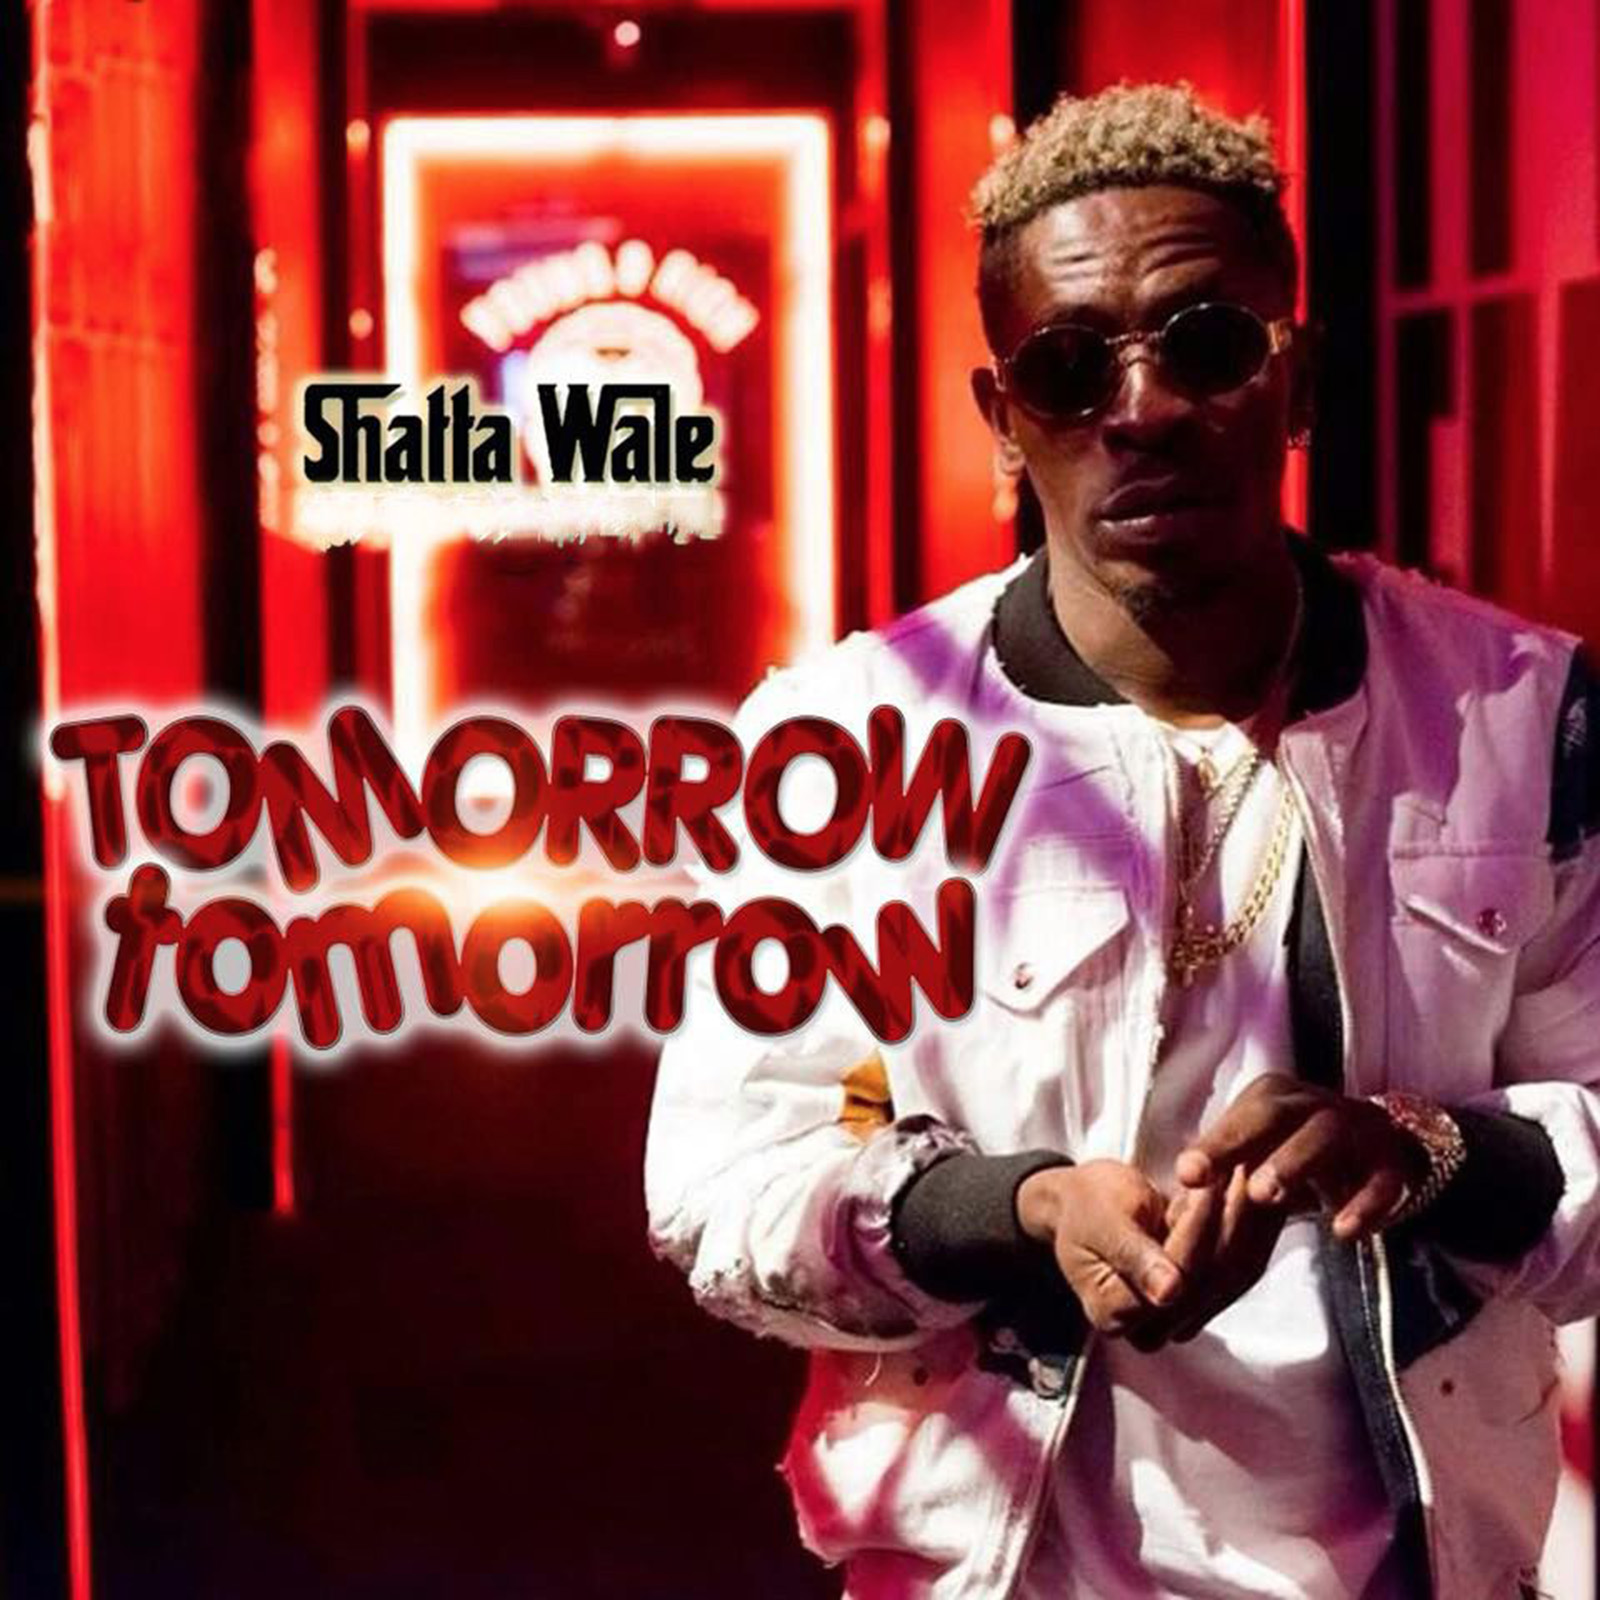 Tomorrow Tomorrow by Shatta Wale